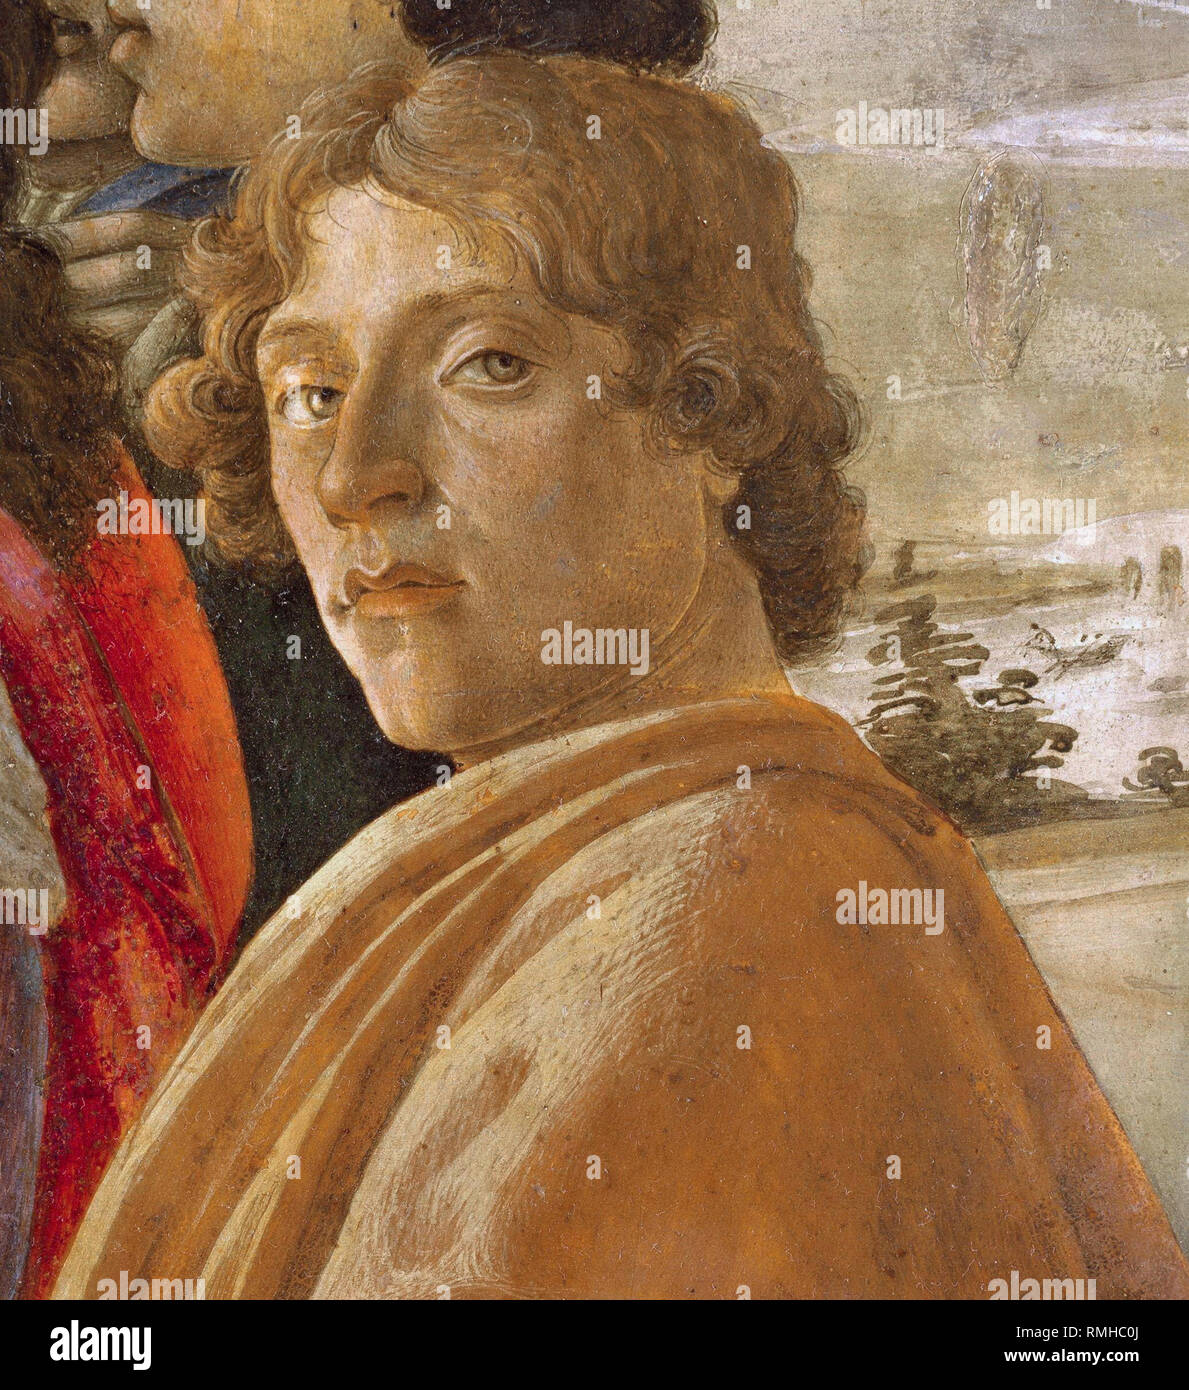 Botticelli, Alessandro di Mariano di Vanni Filipepi (1445 - 1510), Sandro Botticelli, pintor italiano artista Foto de stock